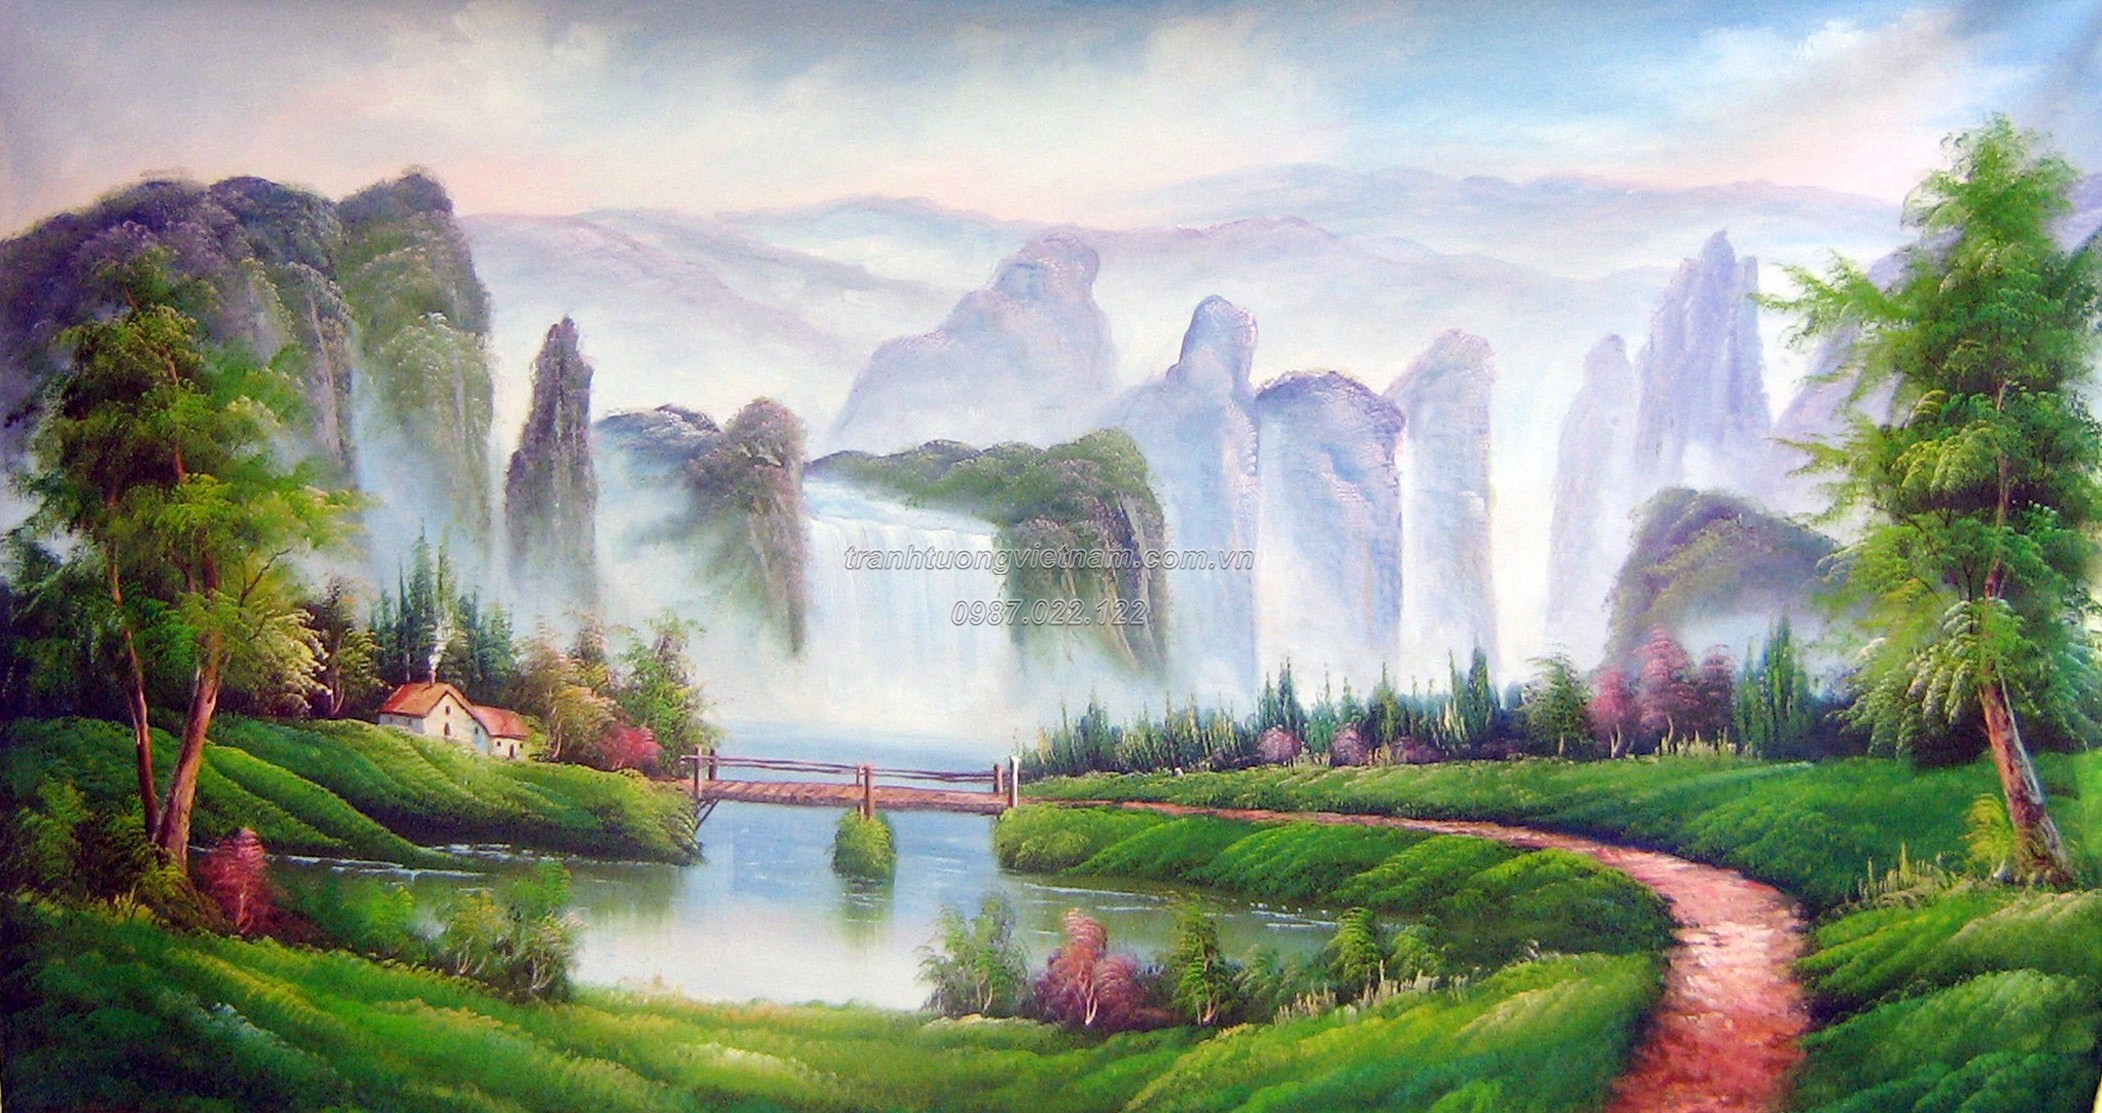 Tranh phong cảnh | +35 Mẫu vẽ tranh phong cảnh quê hương, thiên nhiên 2020  - Vẽ tranh tường 3D đẹp giá rẻ nhất tại Hà Nội | Thi công trọn gói